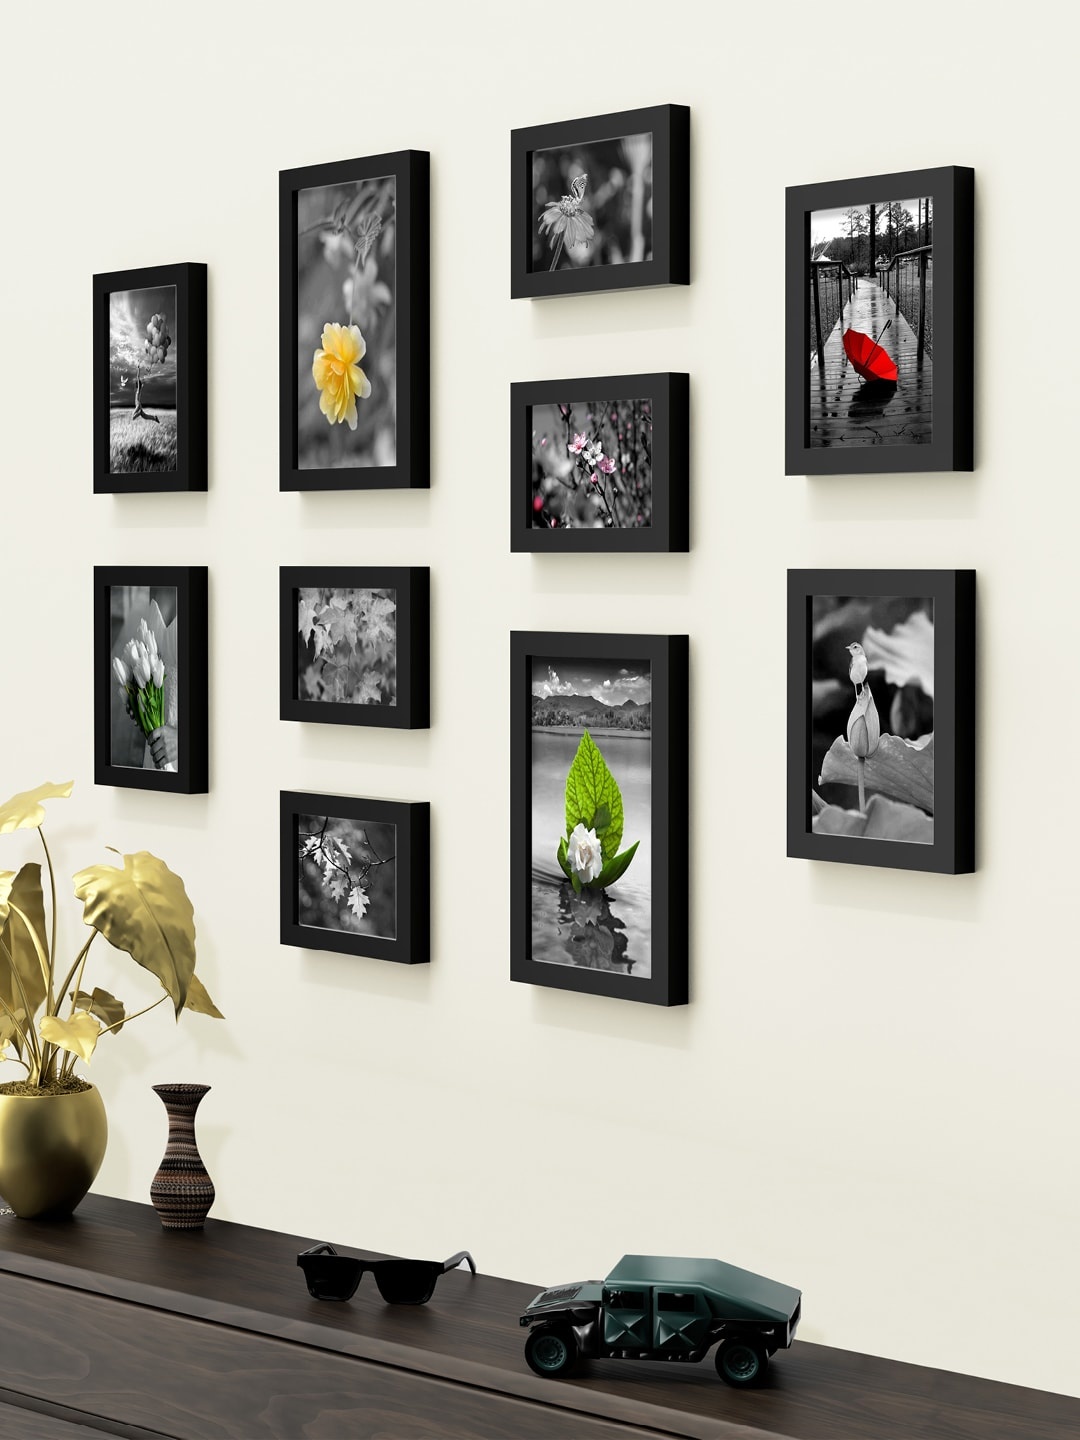 

RANDOM Set Of 10 Black Solid Collage Photo Frames